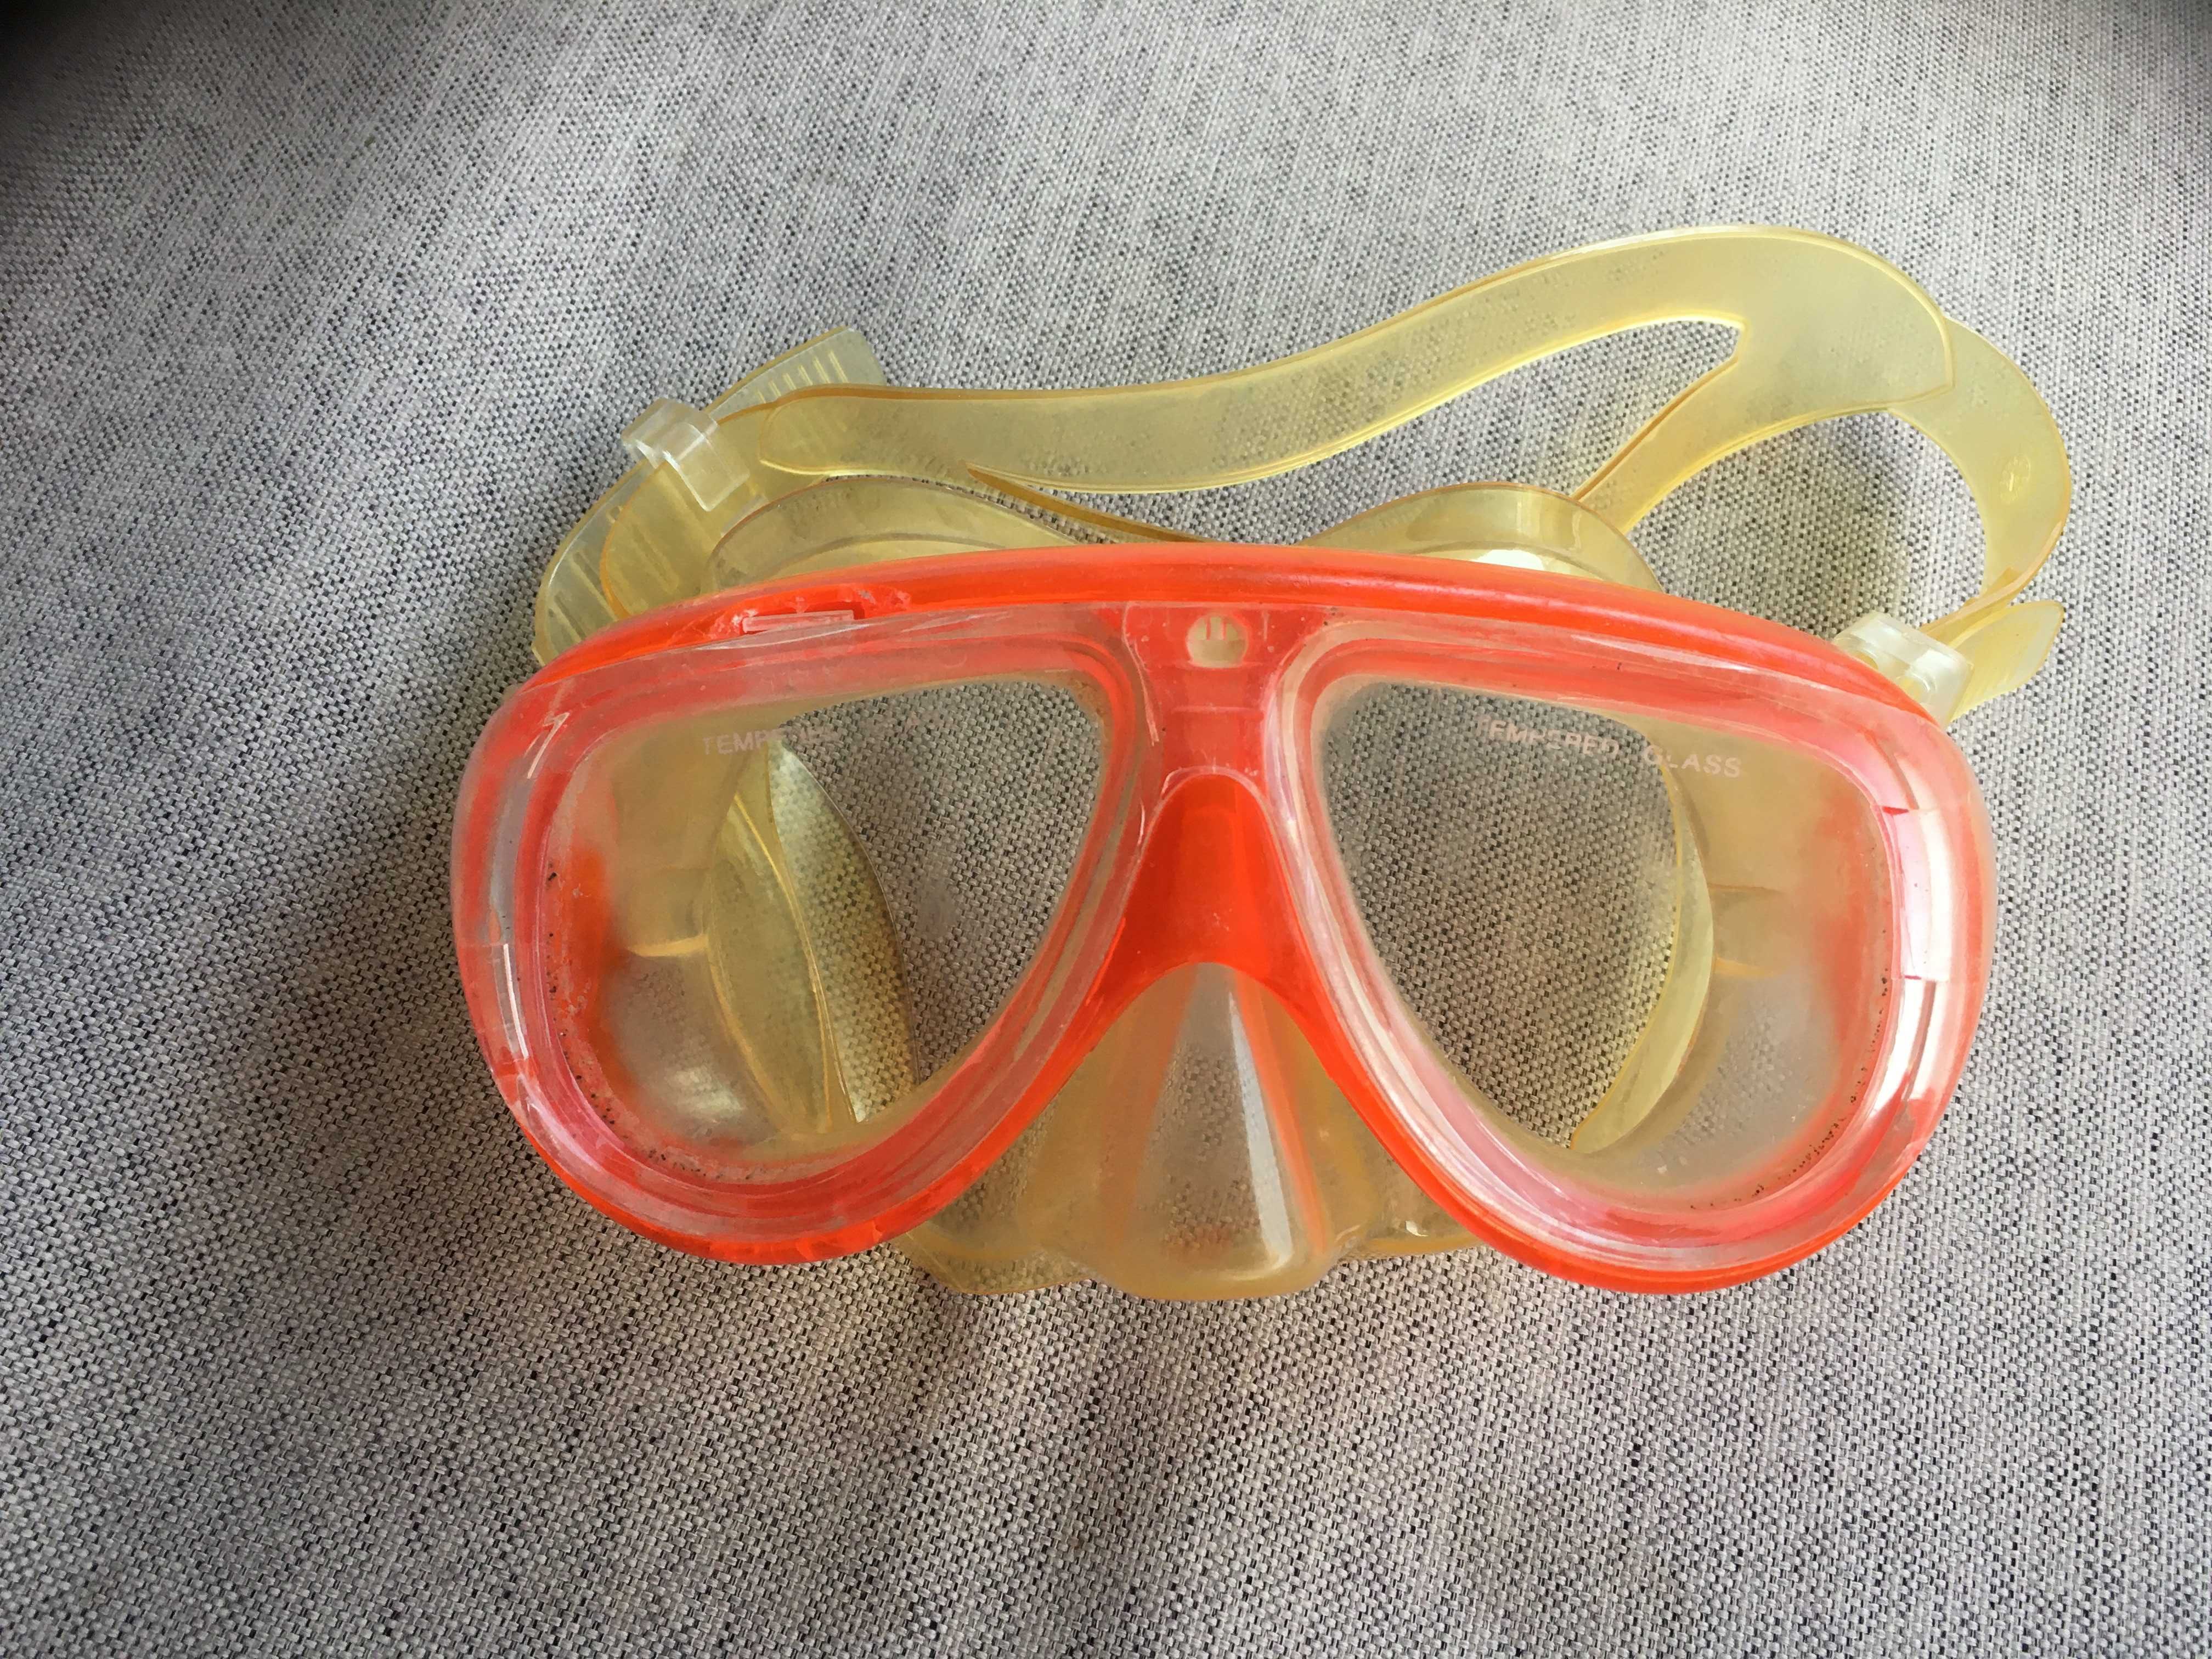 maska do nurkowania pływania używana